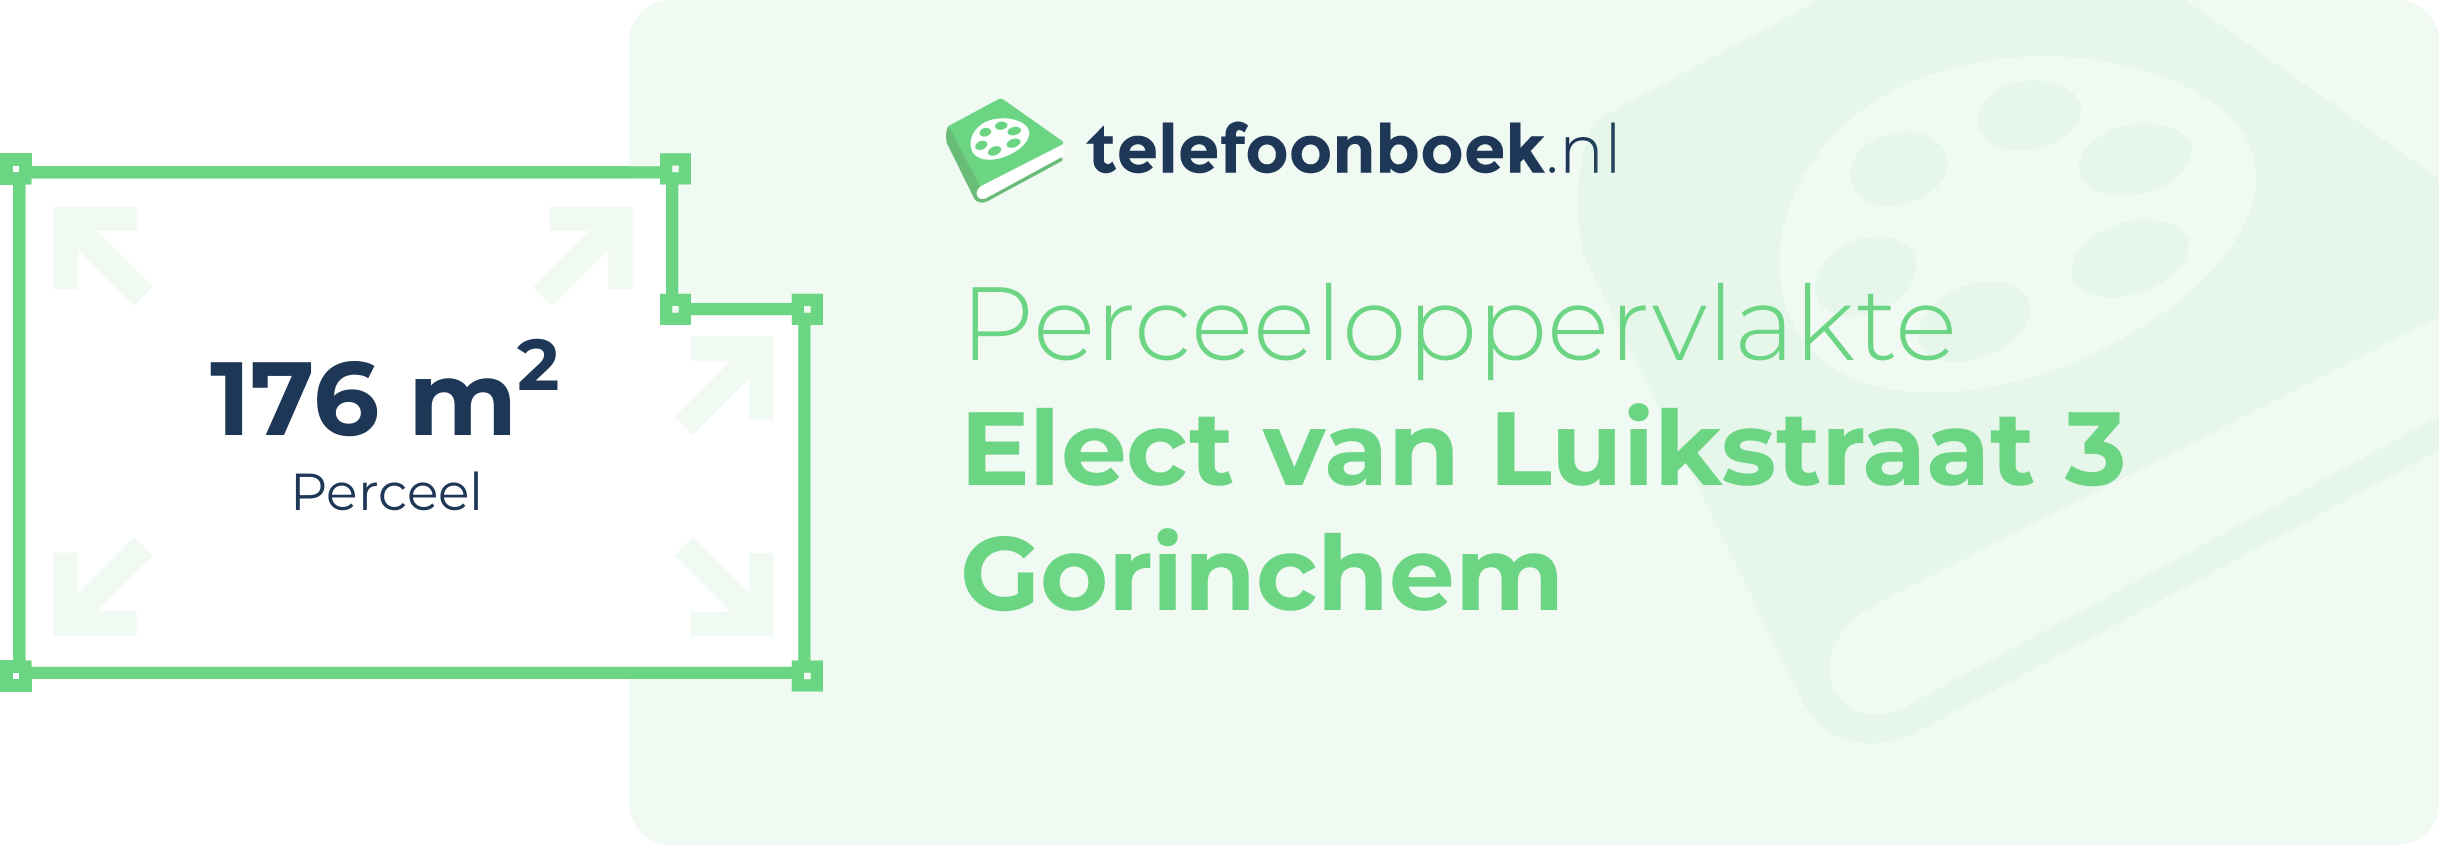 Perceeloppervlakte Elect Van Luikstraat 3 Gorinchem